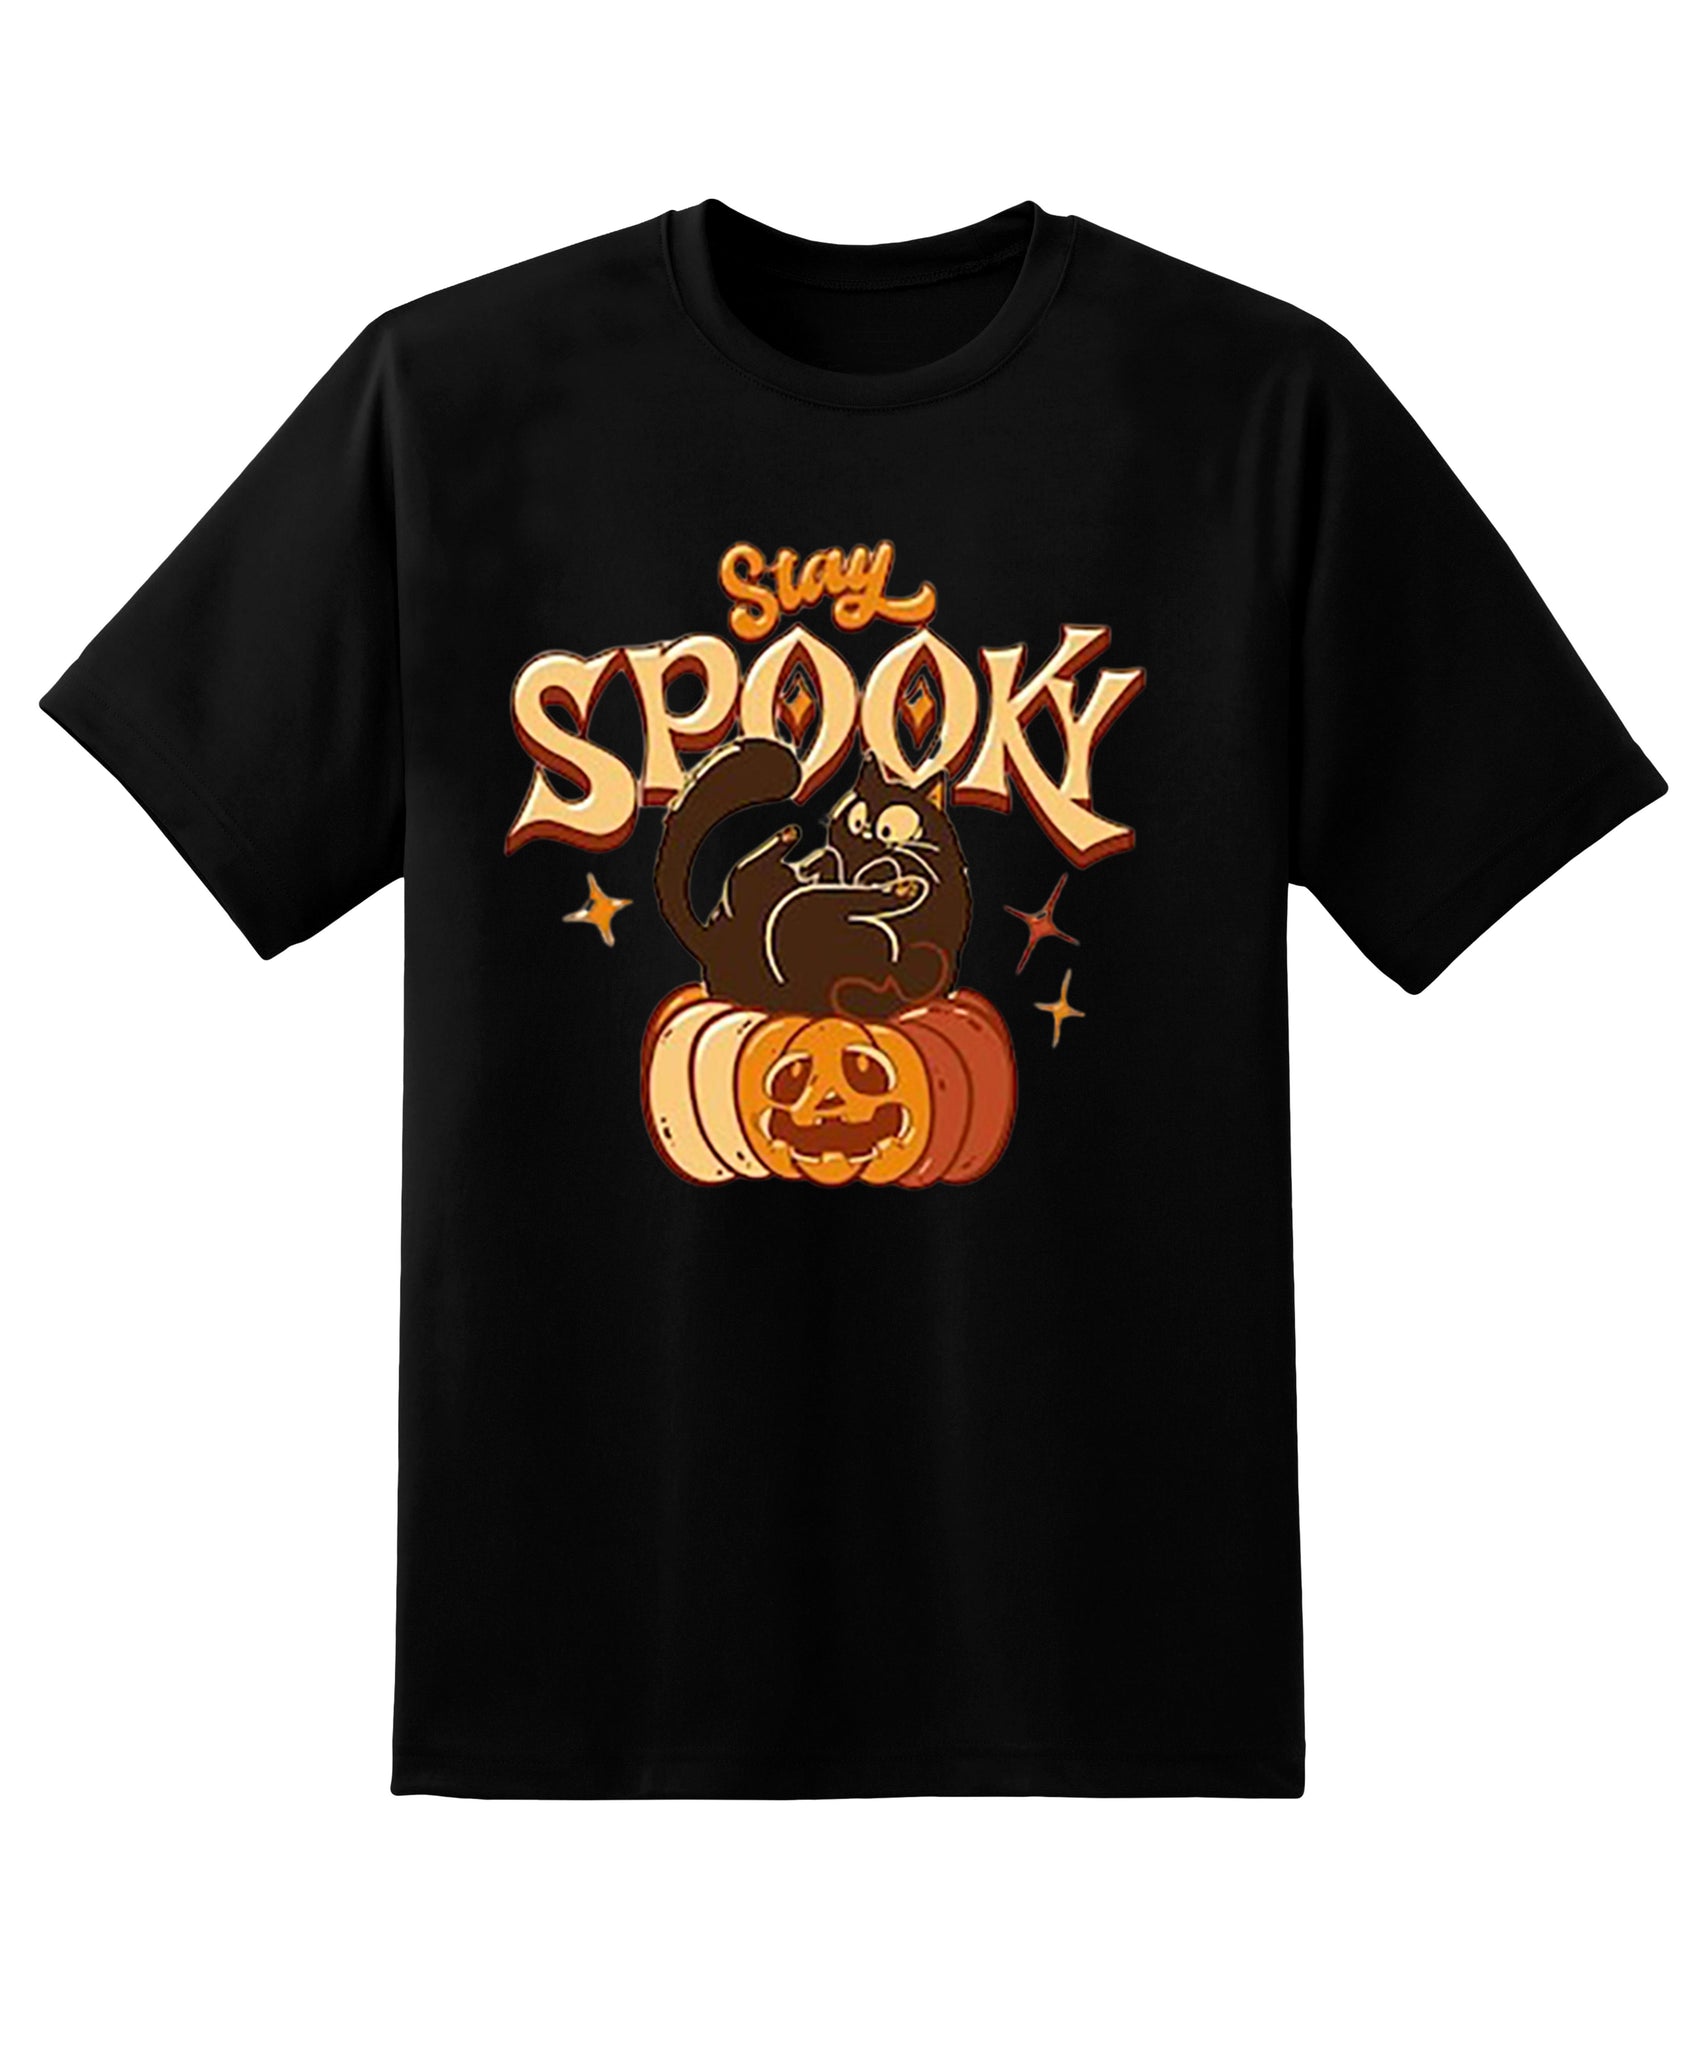 Skitongift Stay Spooky T-Shirt,Spooky Season Shirt,Ghost Halloween,Halloween Gift Shirt,Womens Halloween T-Shirt